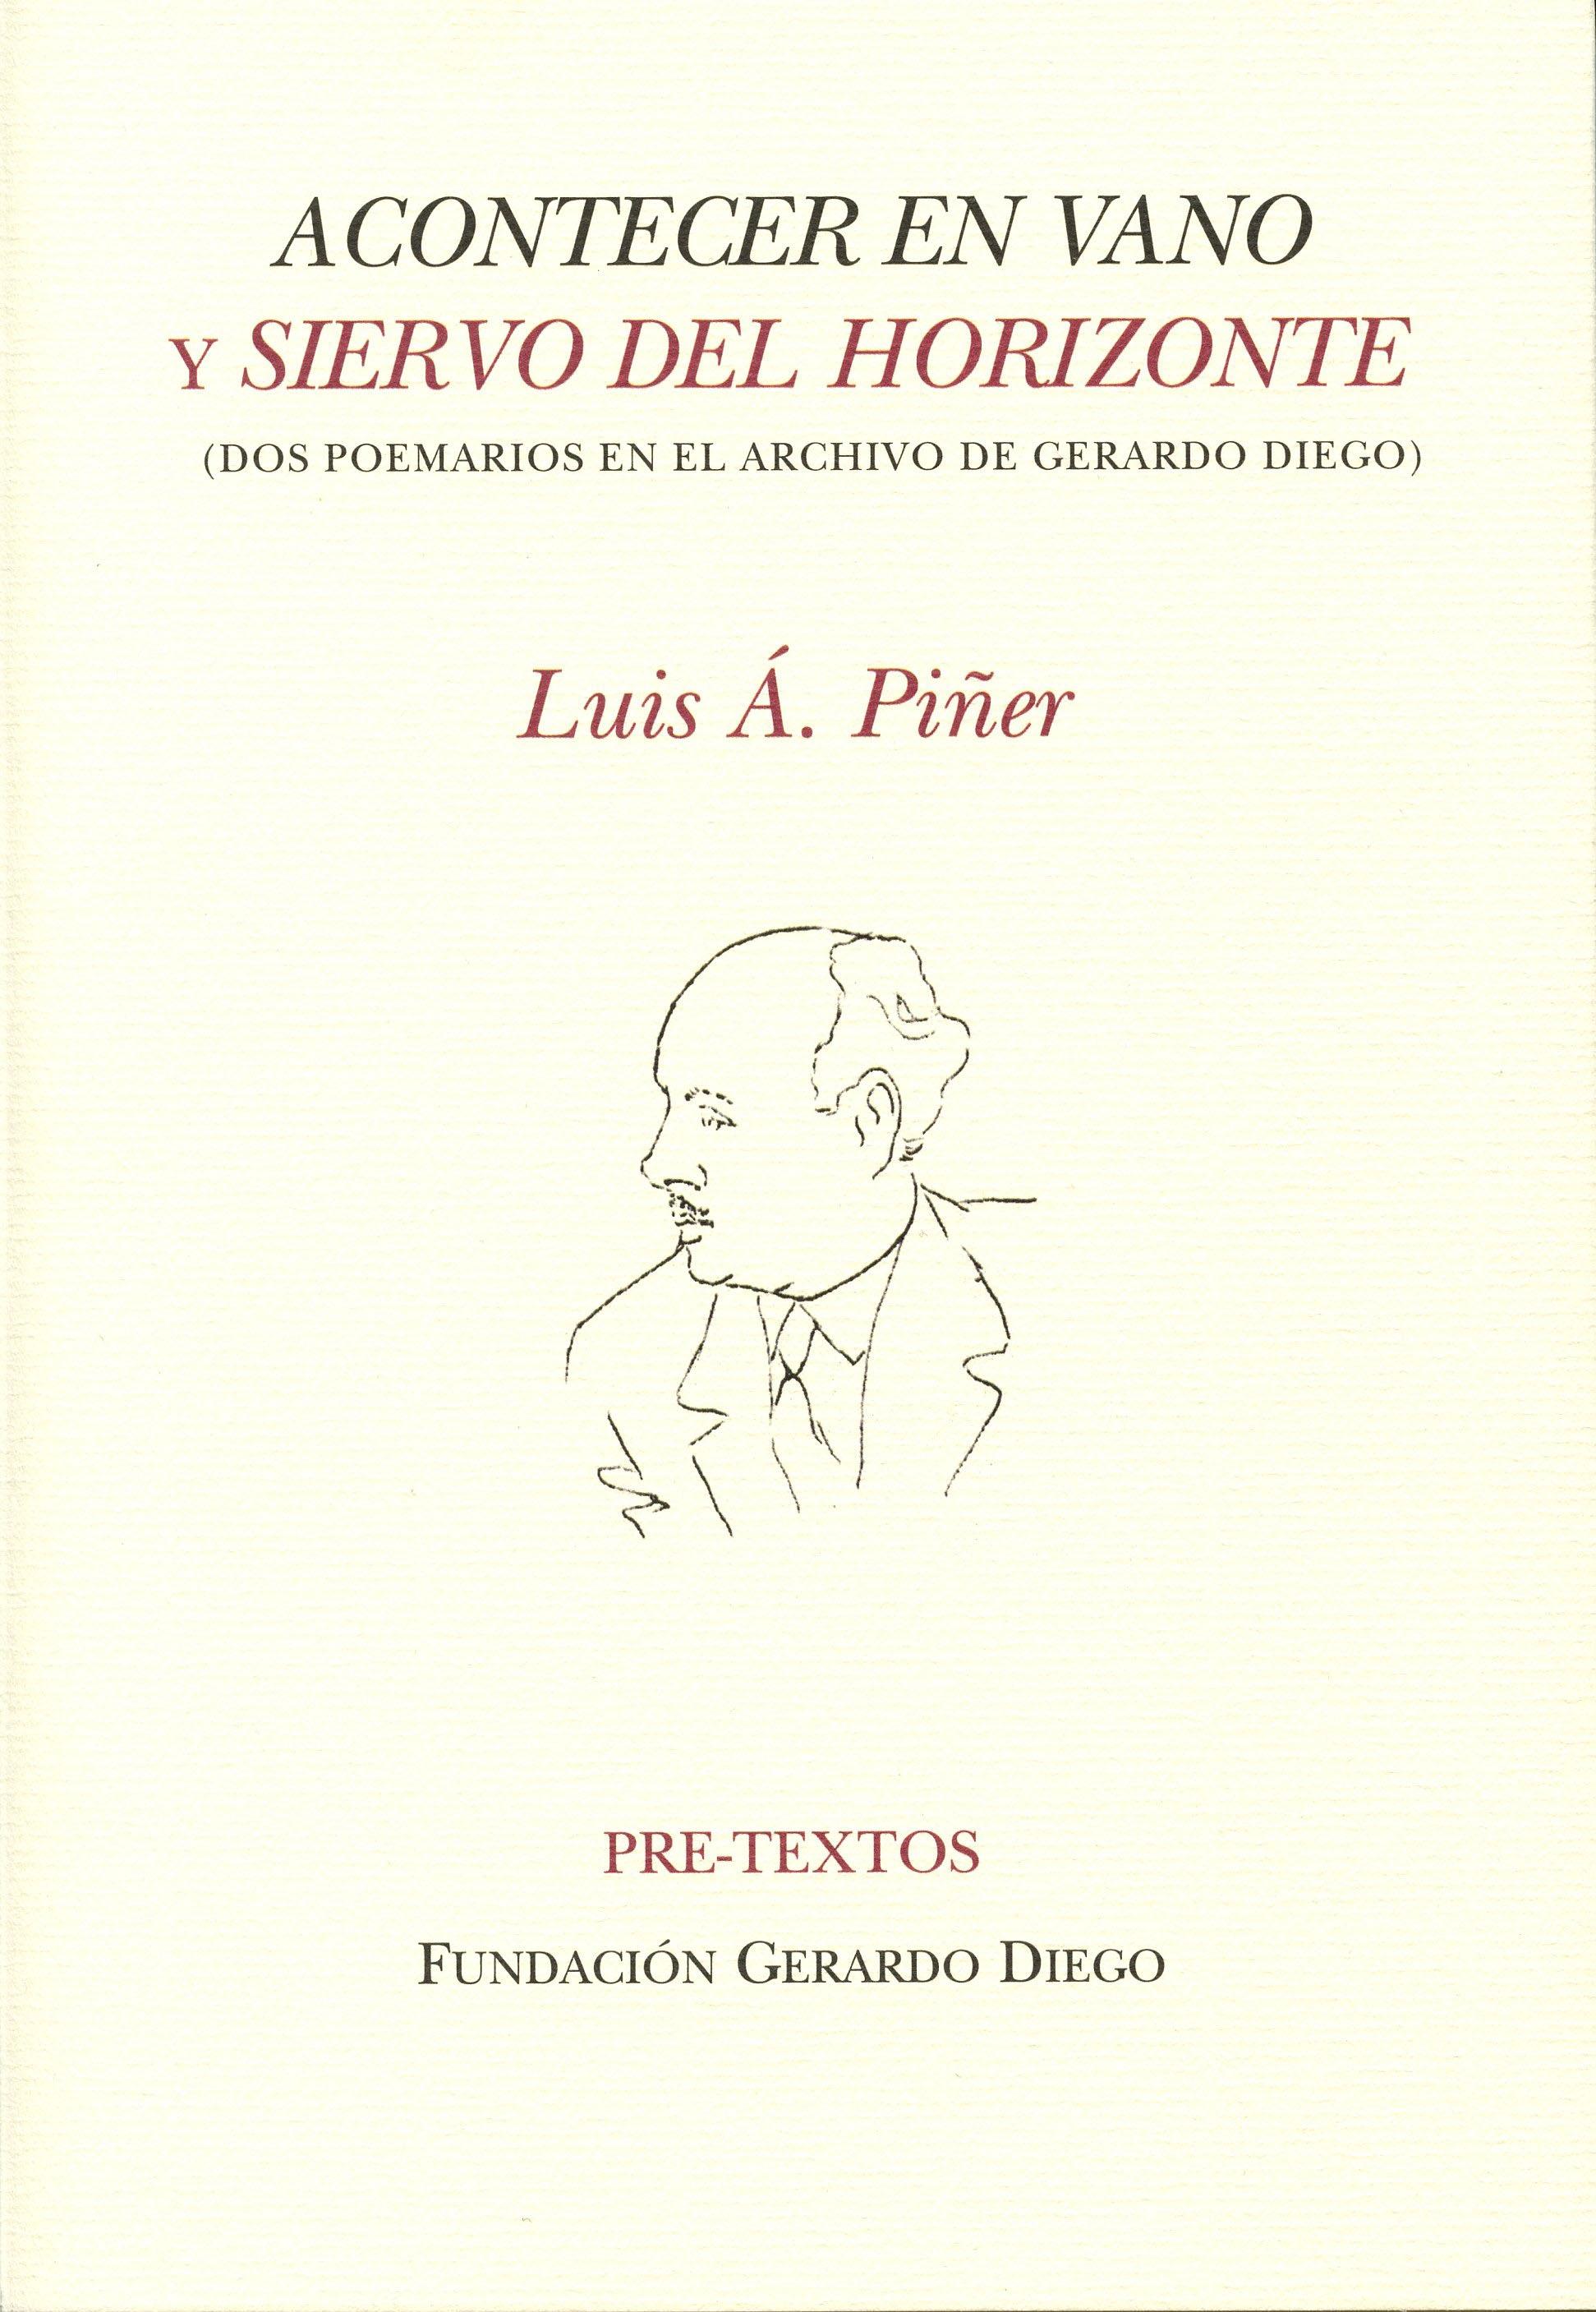 Acontecer en Vano y Siervo del Horizonte "(Dos Poemarios en el Archivo de Gerardo Diego)". 